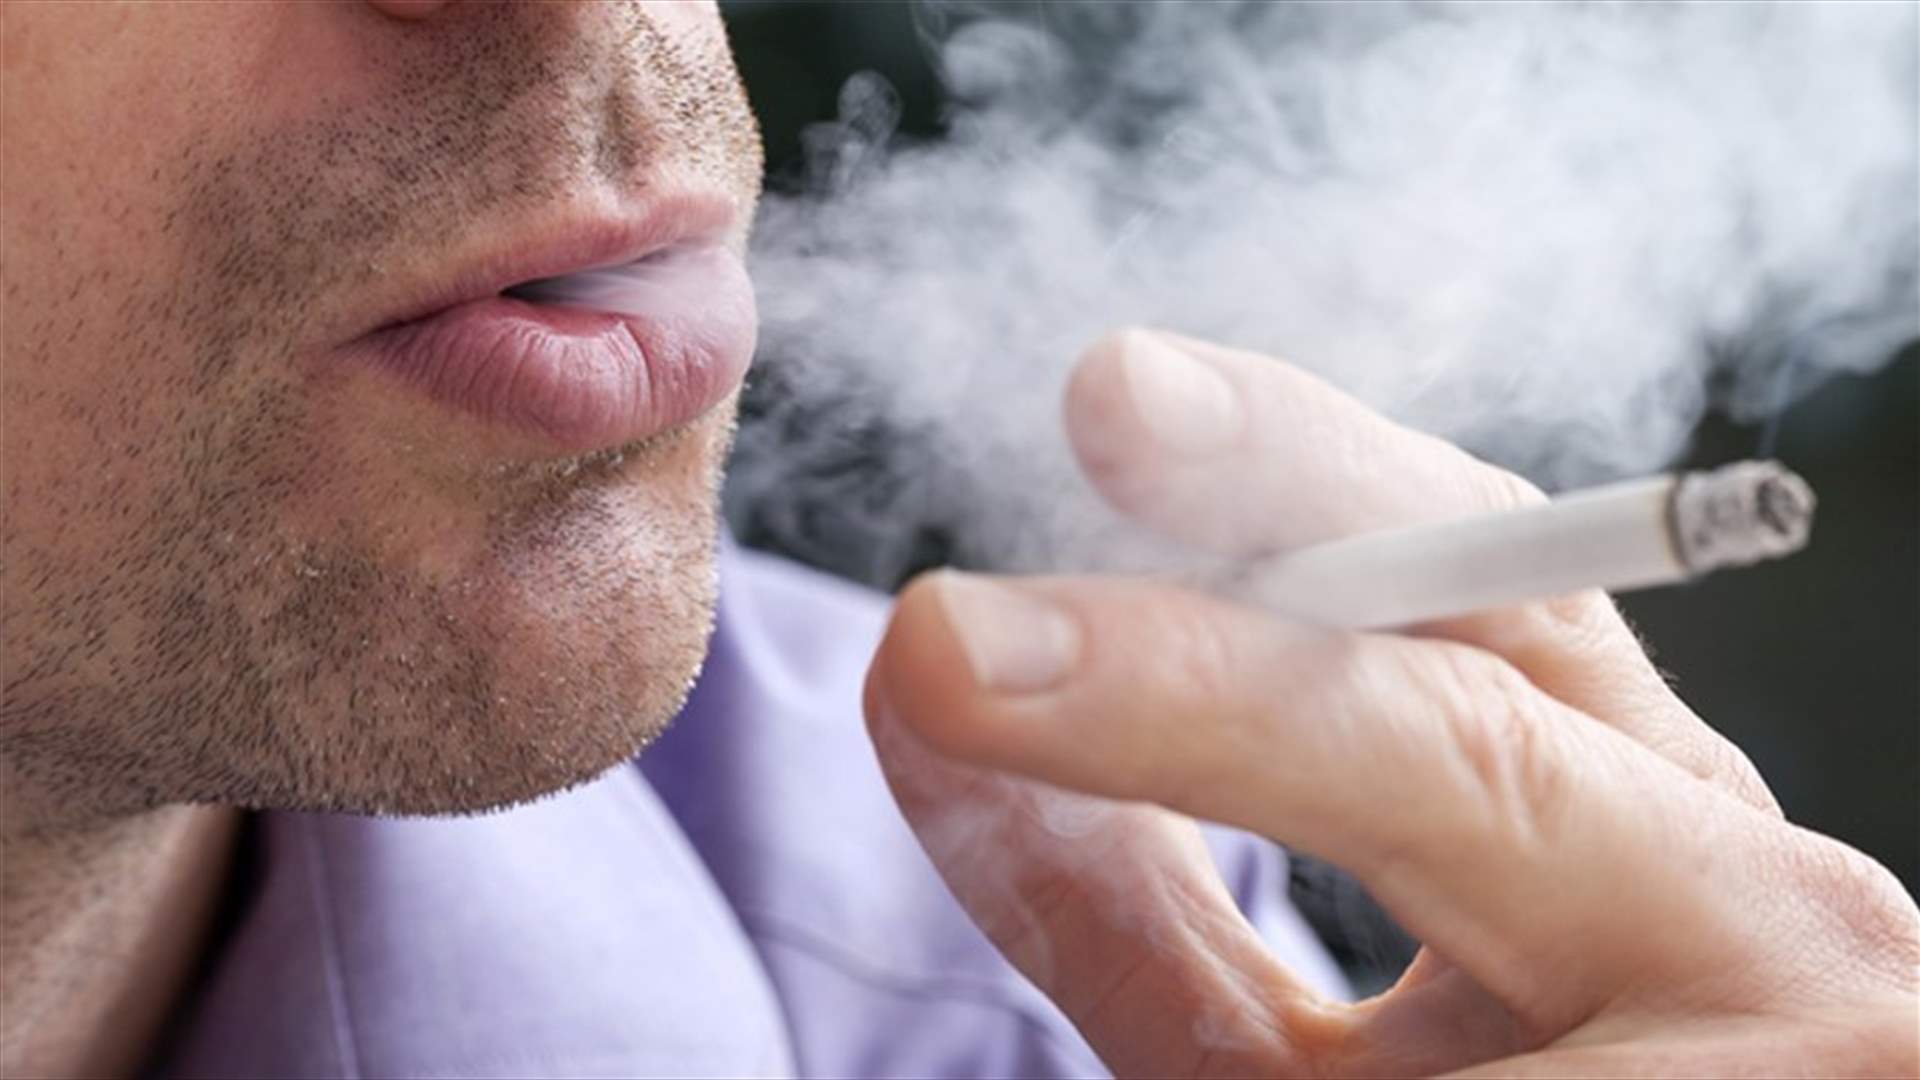 دراسة: المدخنون أكثر عرضة للإصابة بالجلطات مرات عديدة